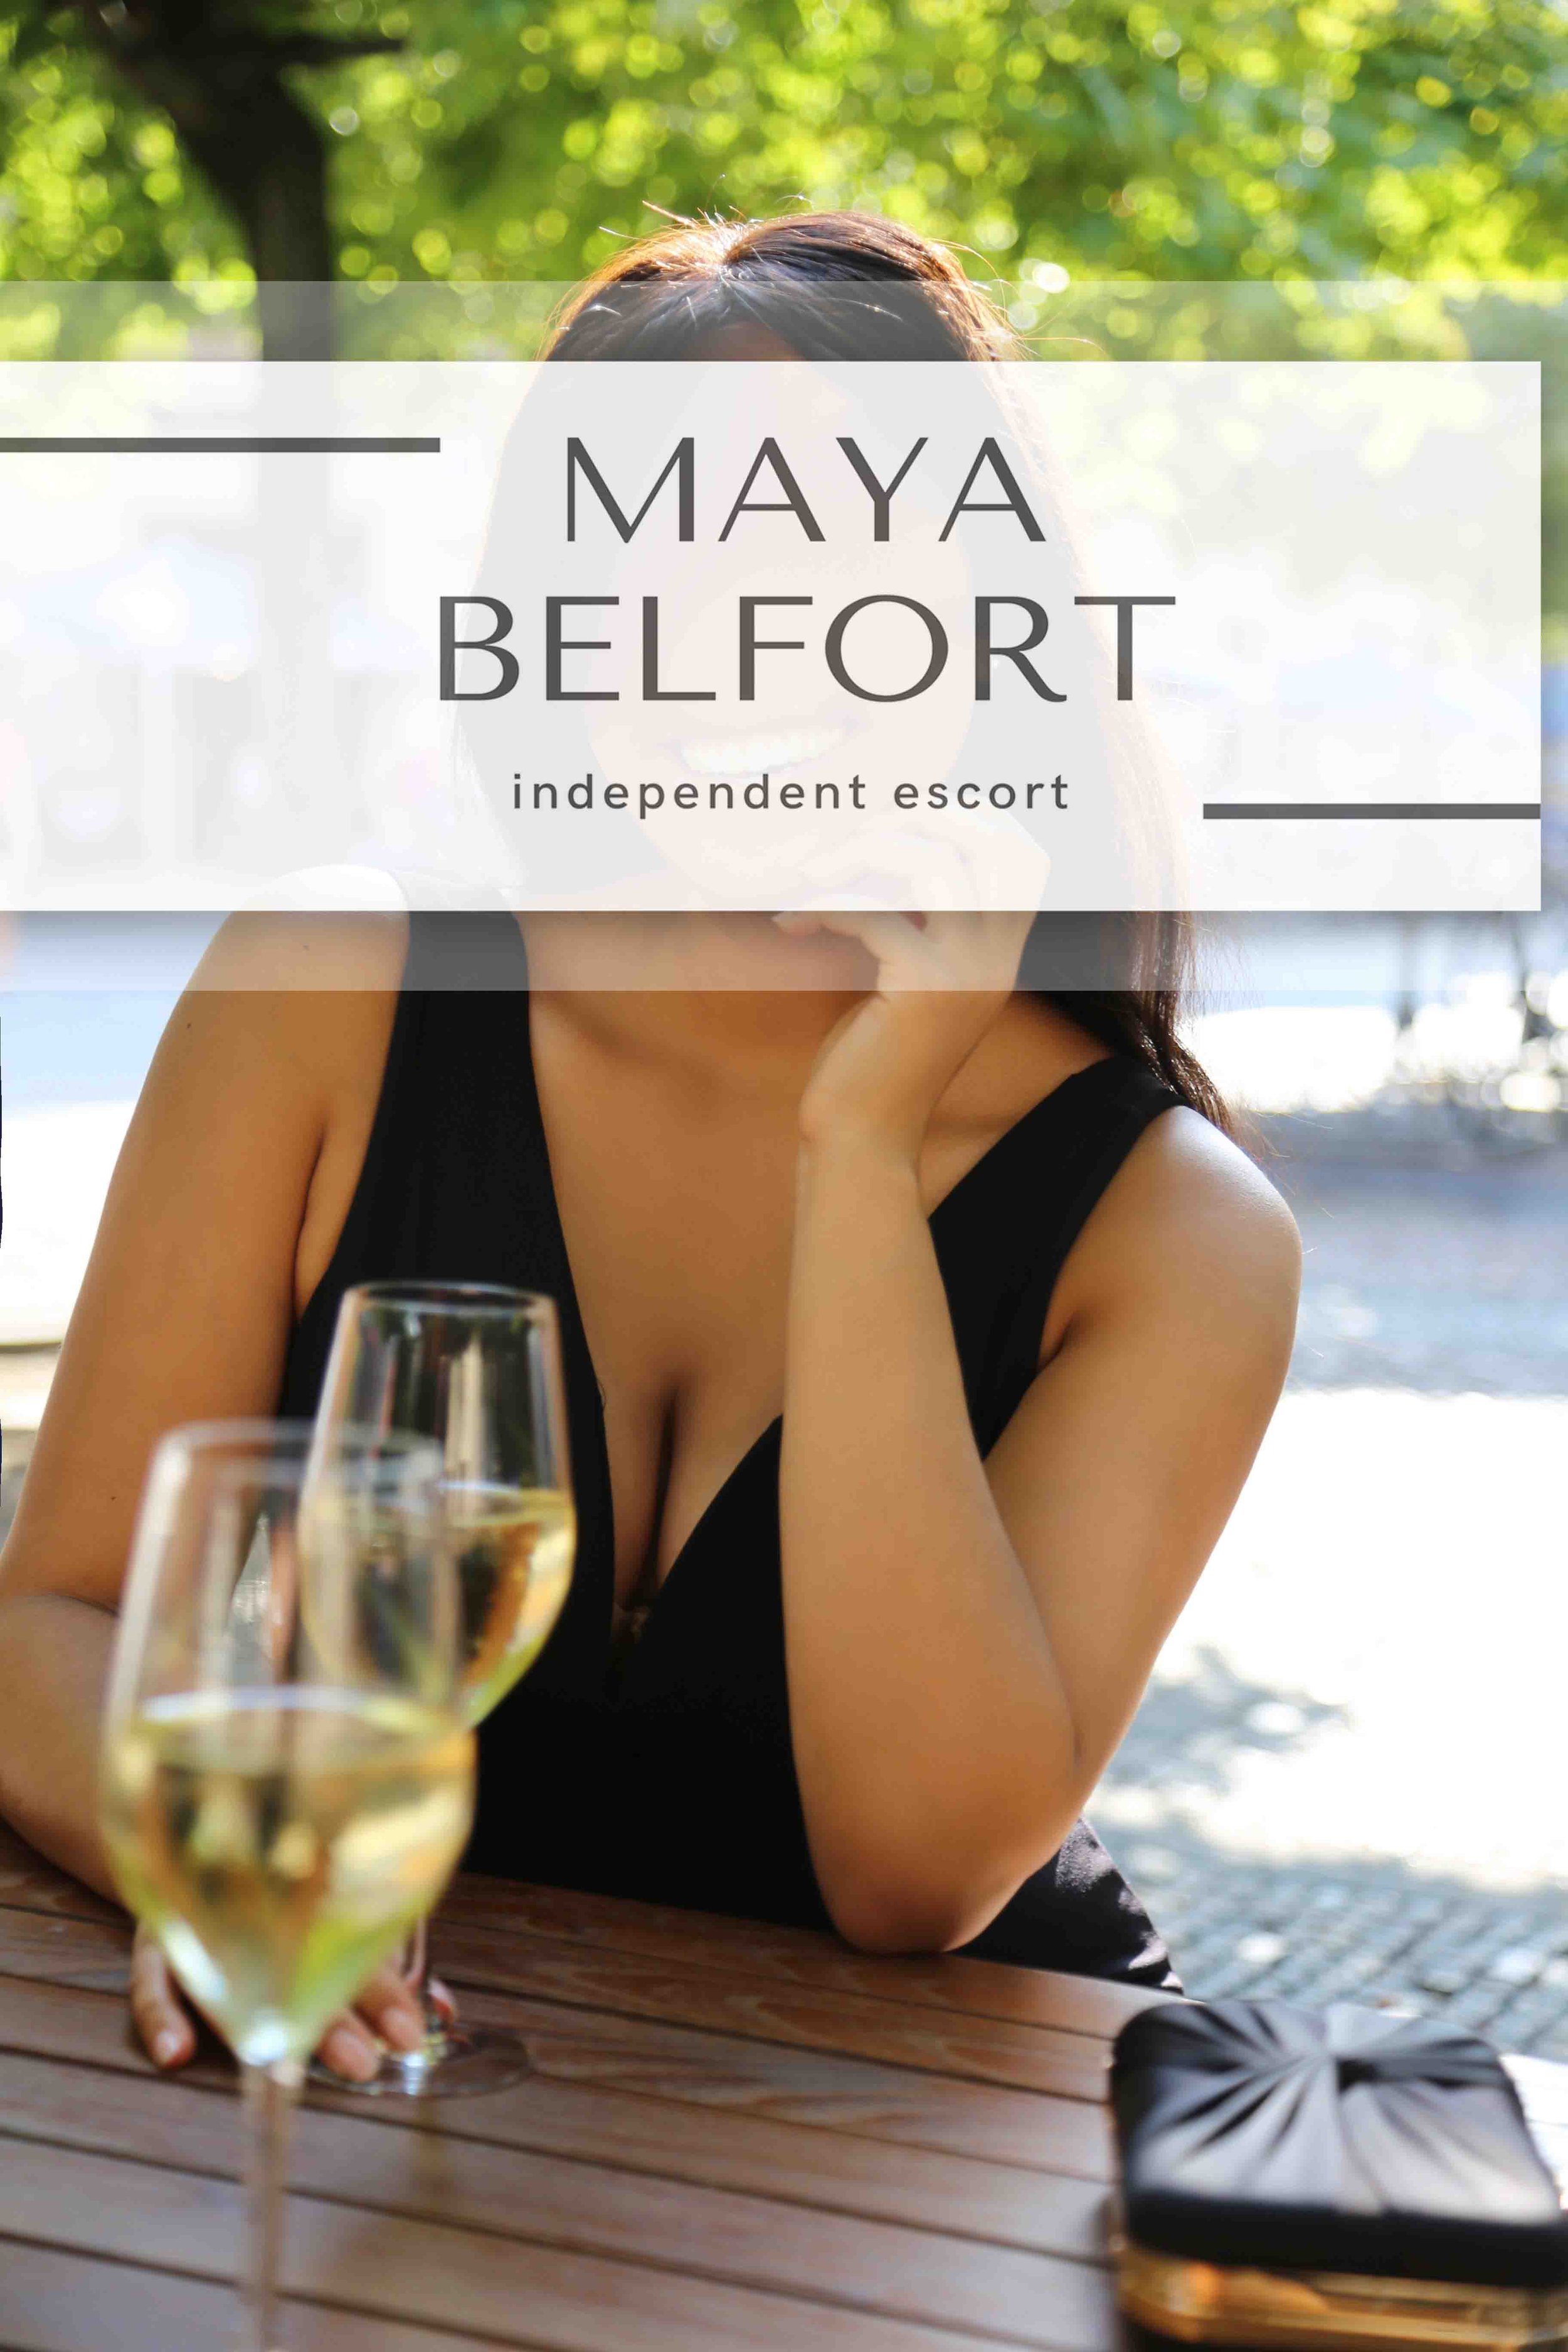 independendent escort Maya belfort